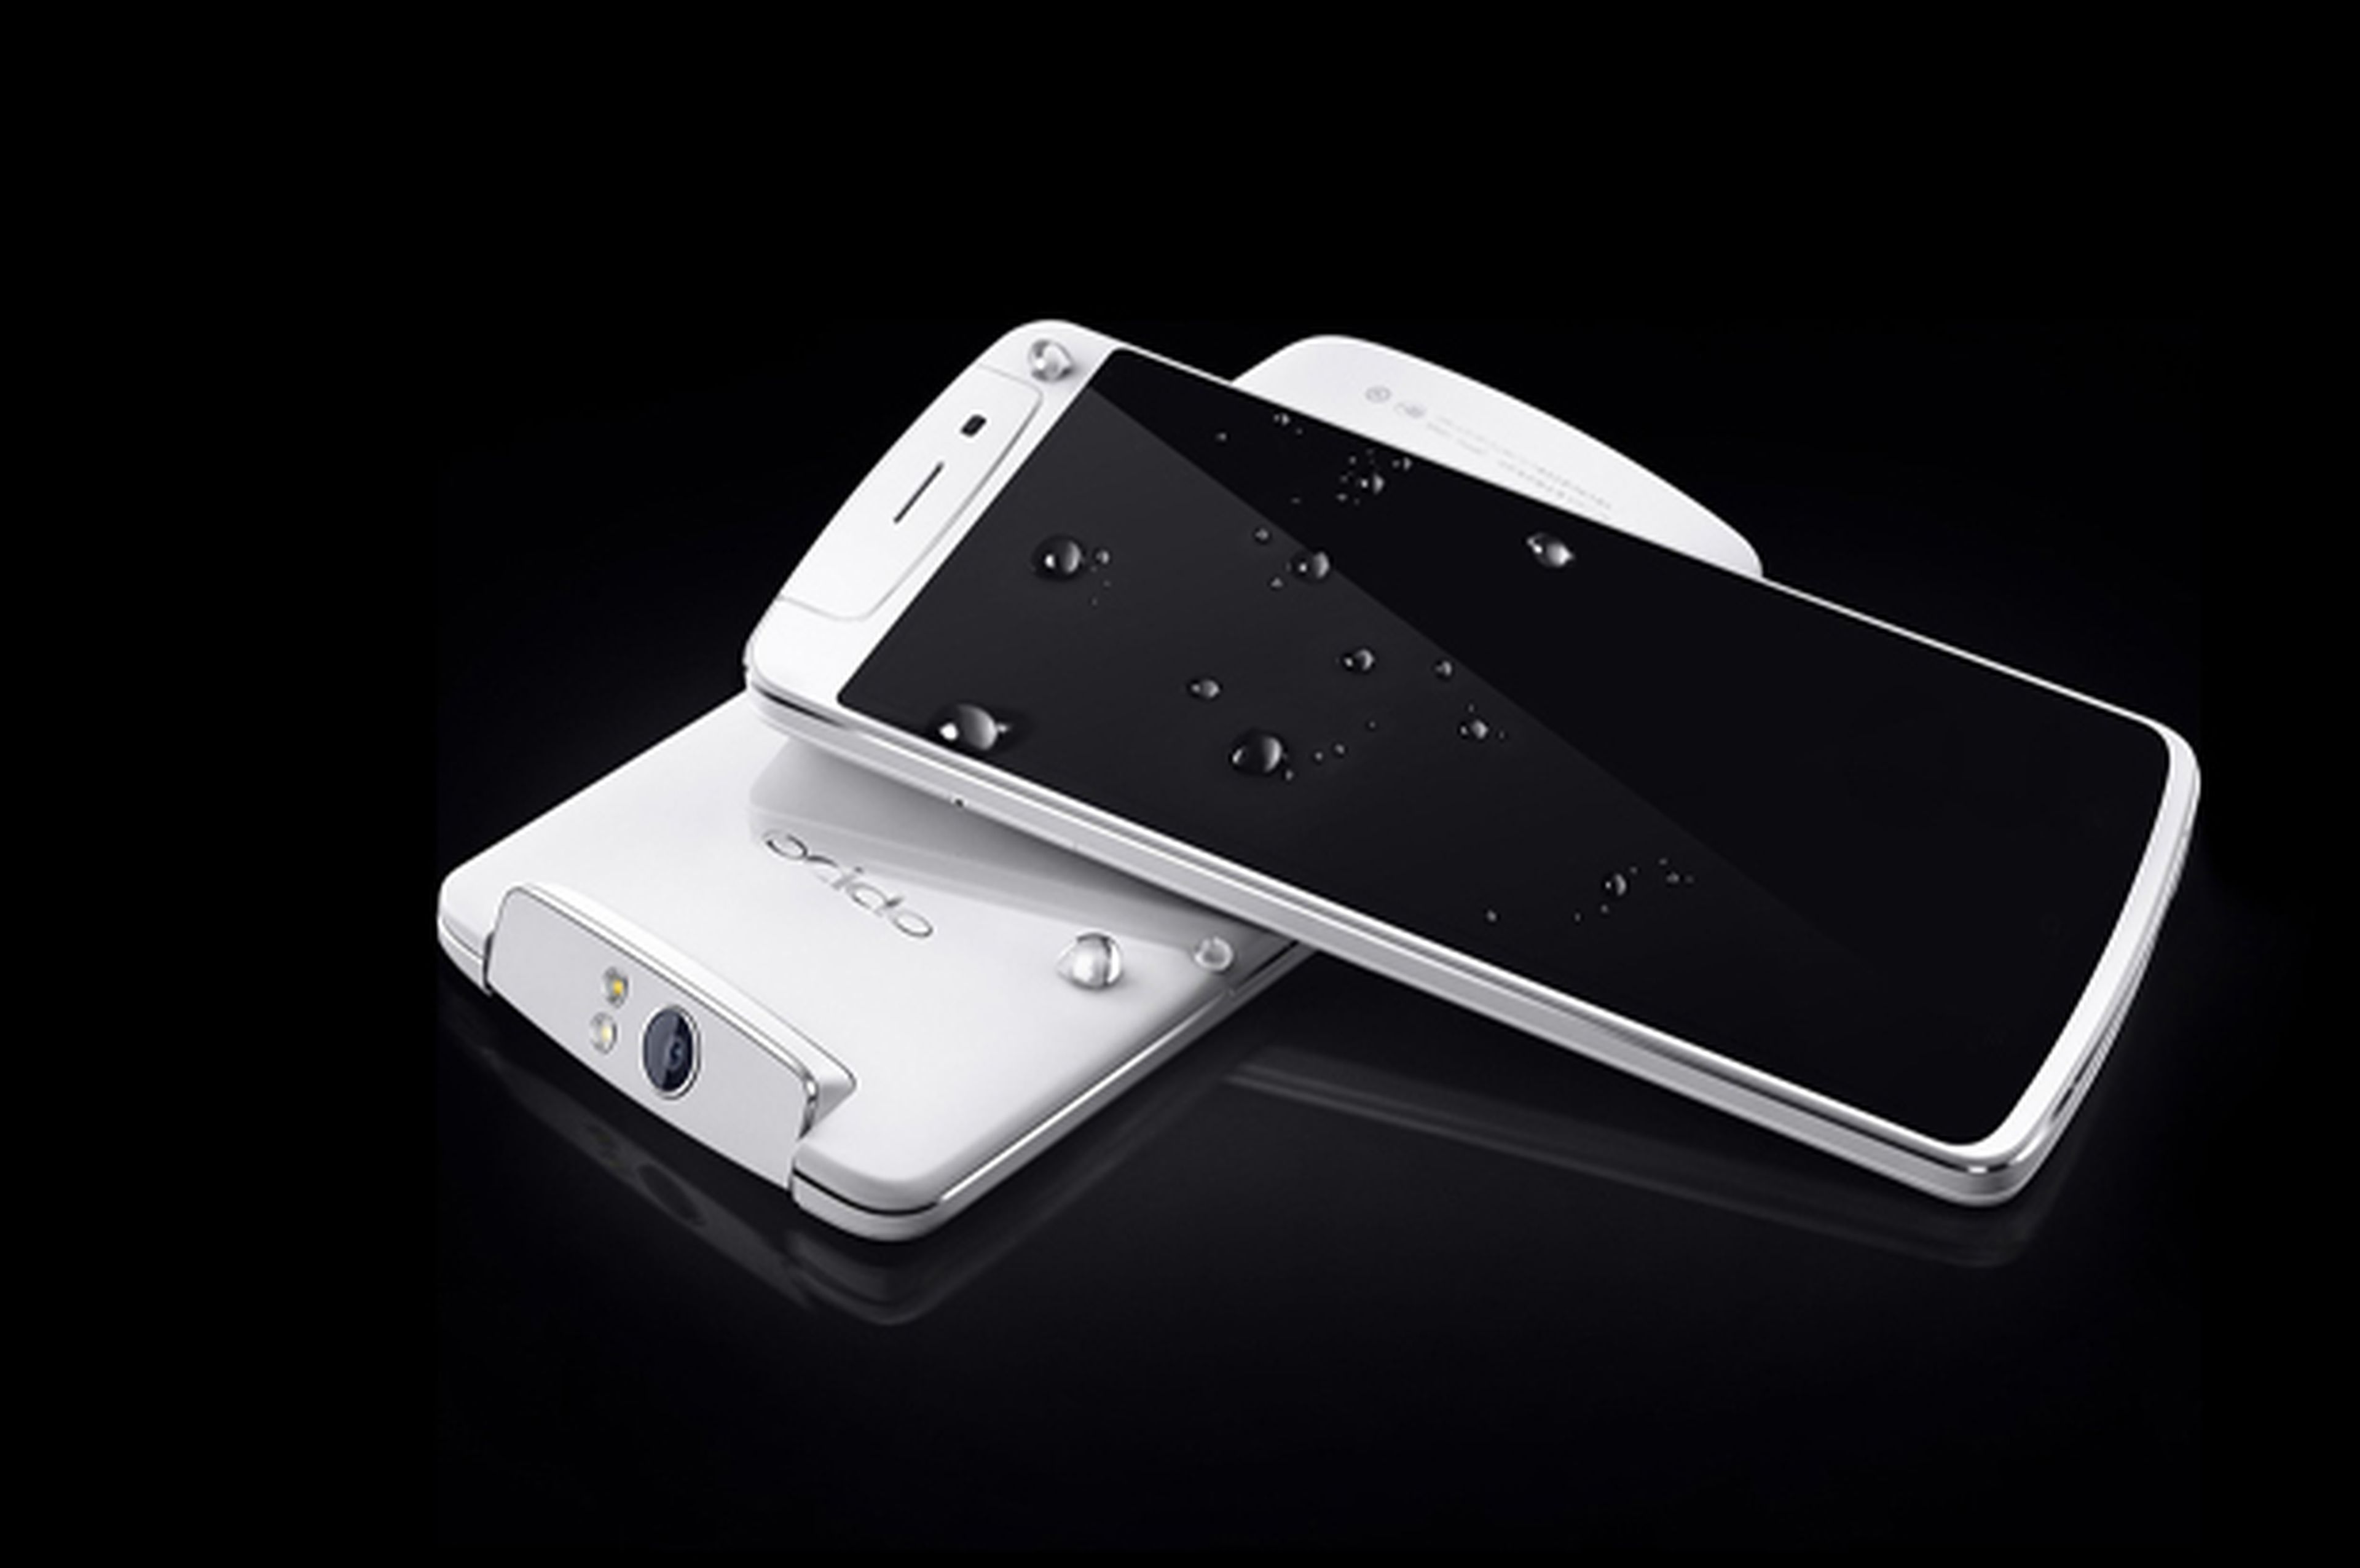 Oppo N1, presentado el smartphone chino de 5,9 pulgadas